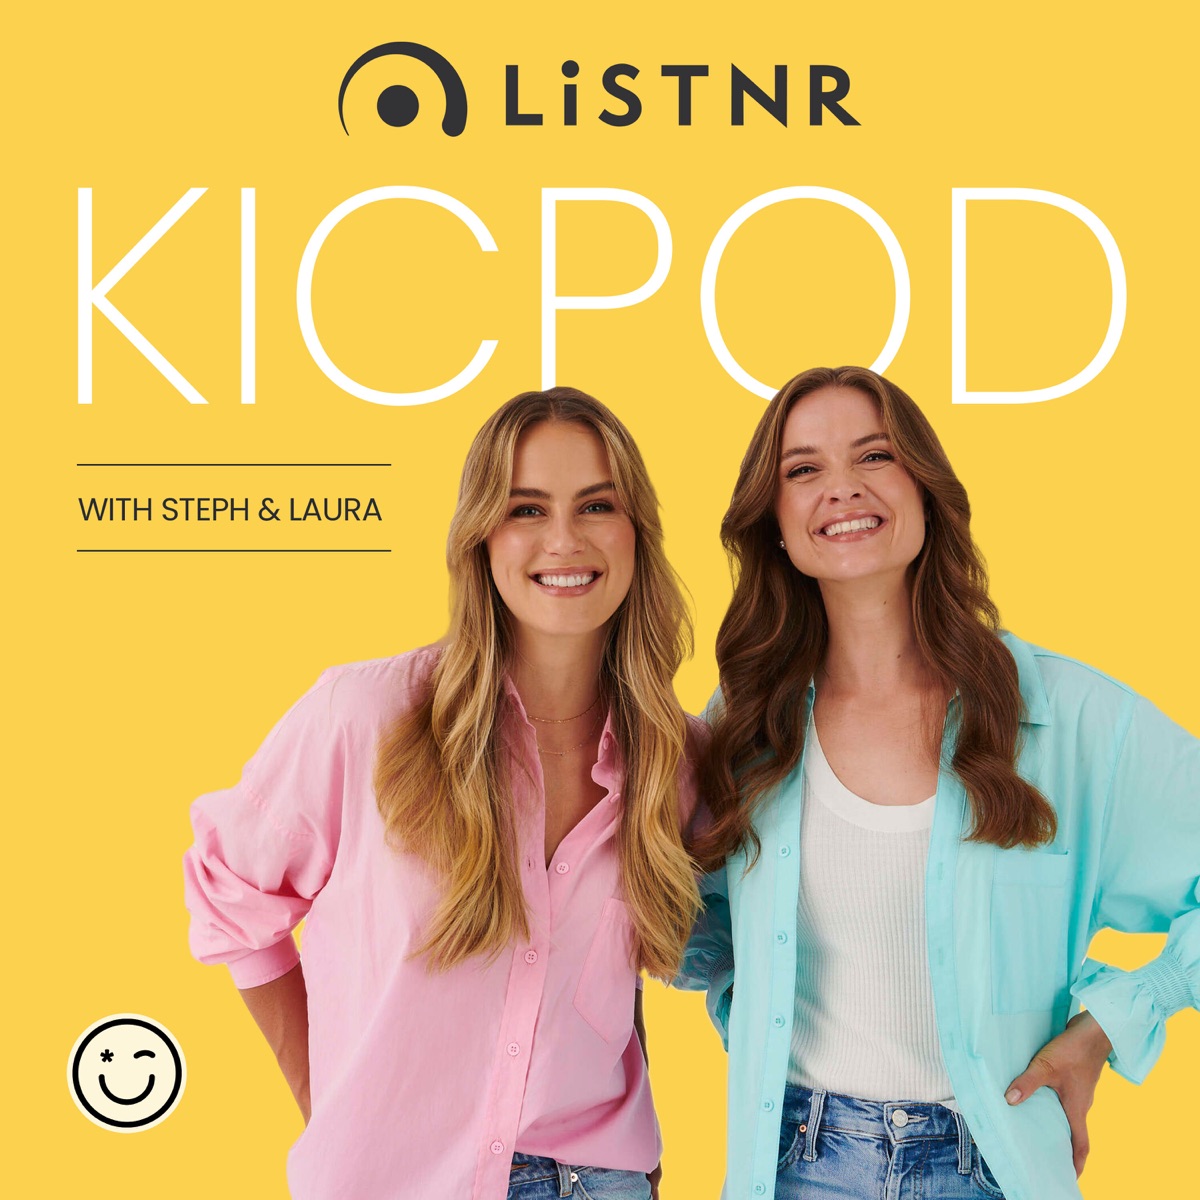 KICPOD â€“ Podcast â€“ Podtail